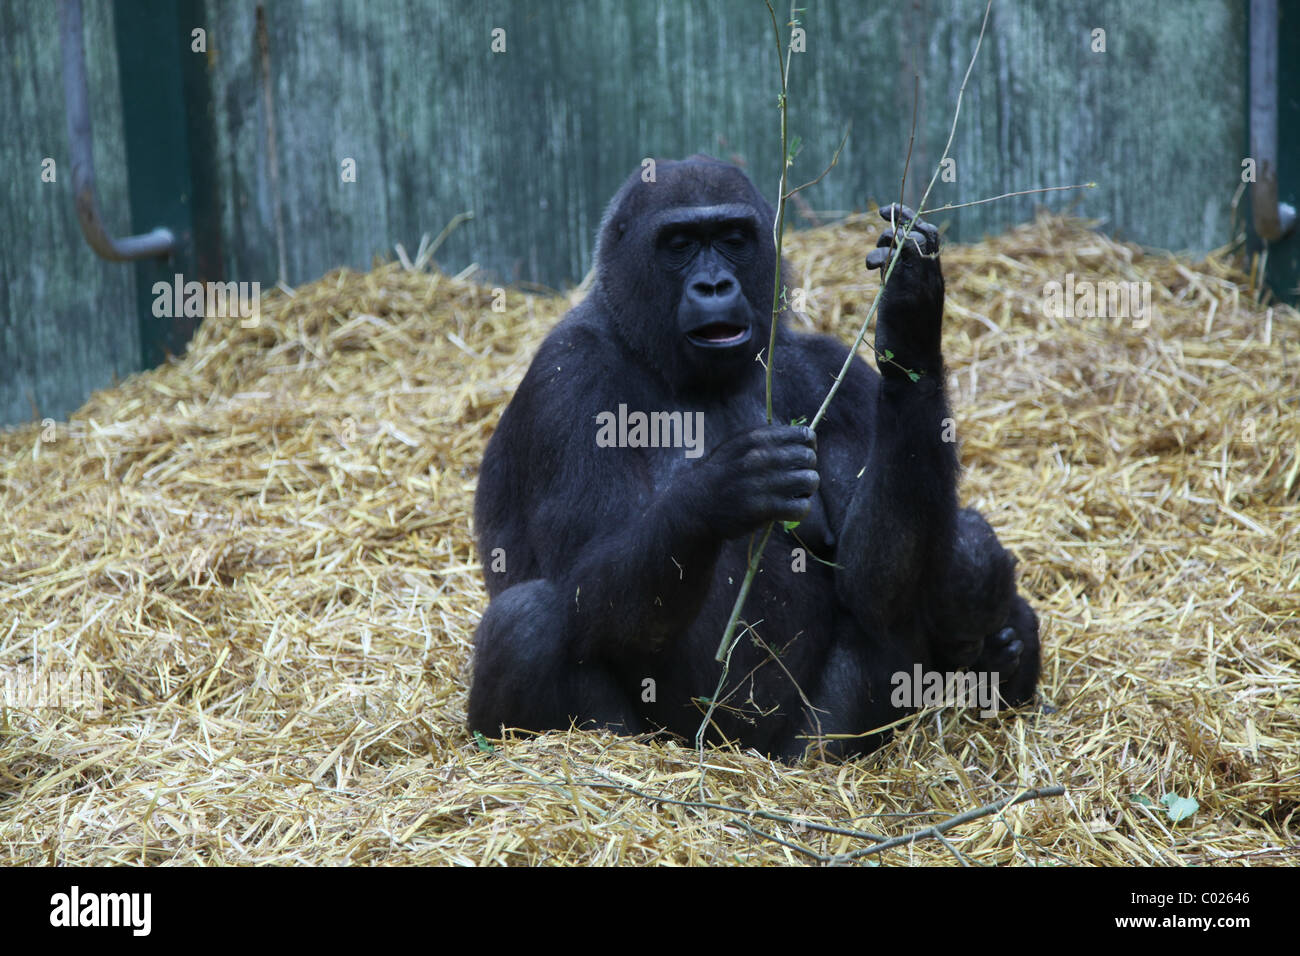 L'alimentation des gorilles au zoo Banque D'Images